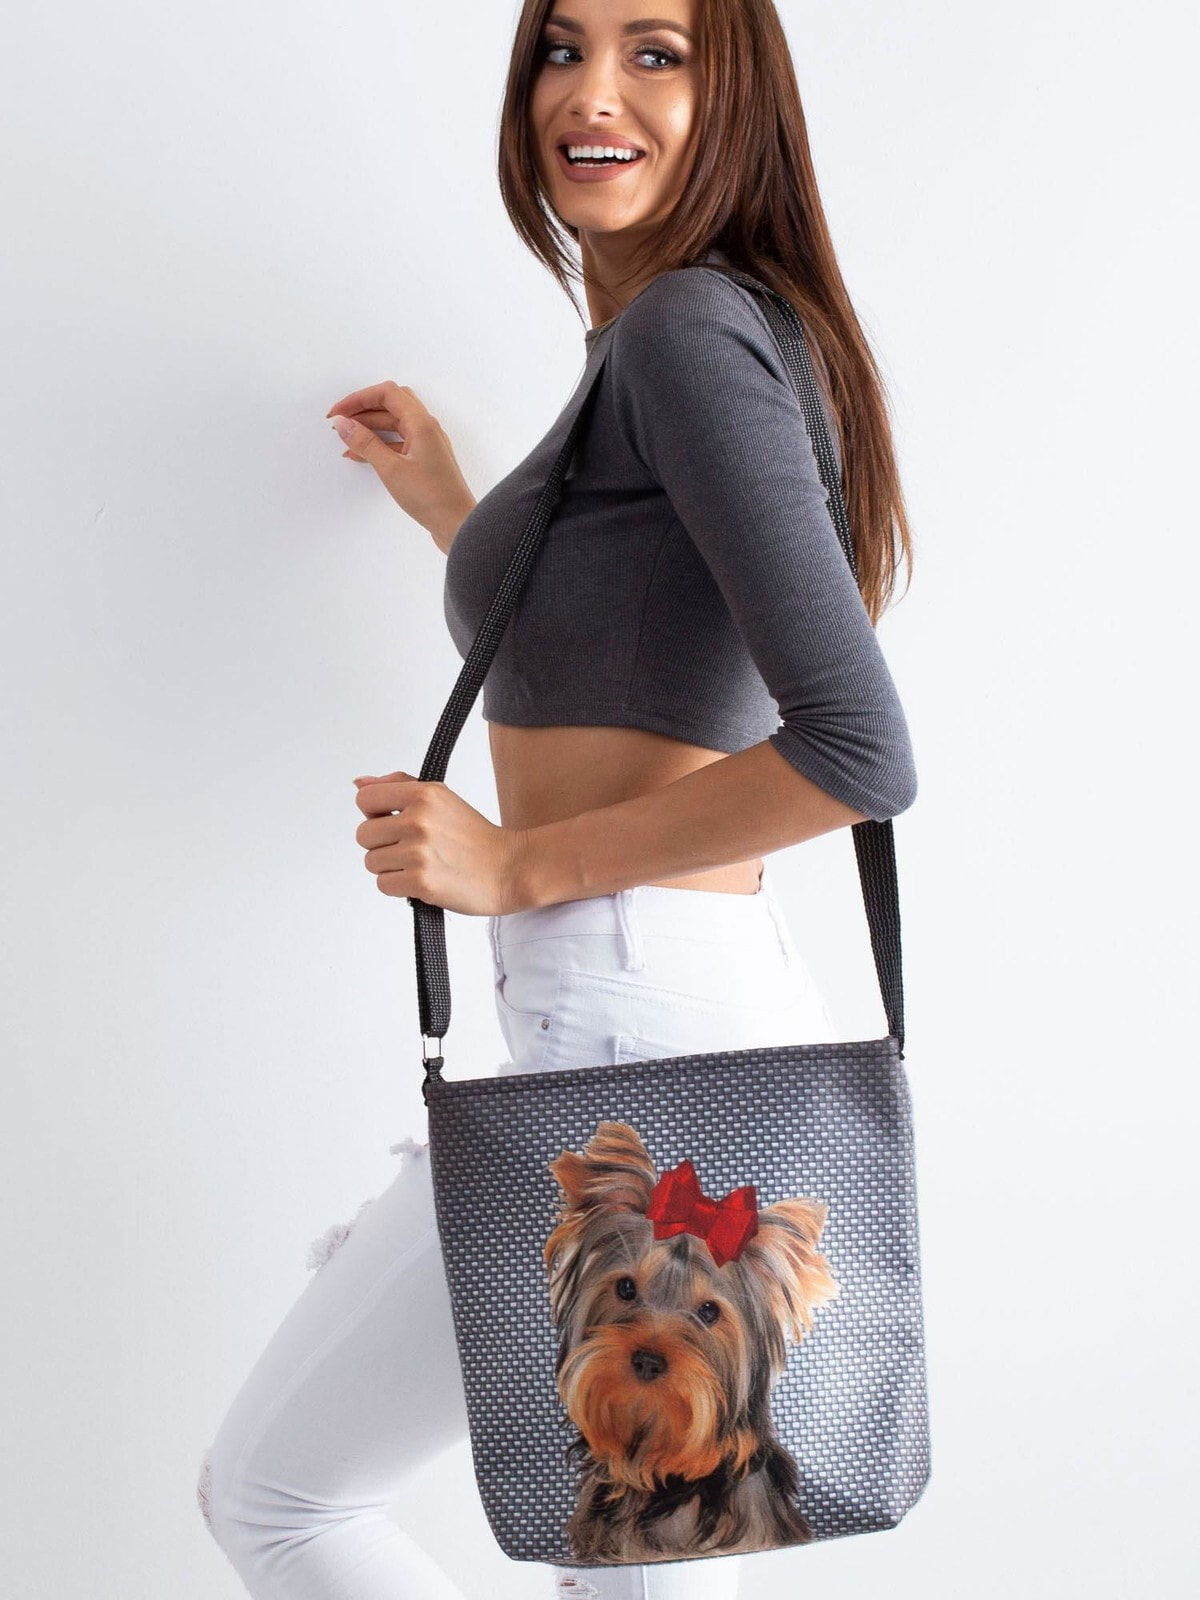 Женская сумка Factory Price с принтом собаки серая,  основное отделение на молнии, внутренний карман для телефона и безделушек, длинный регулируемый ремень.